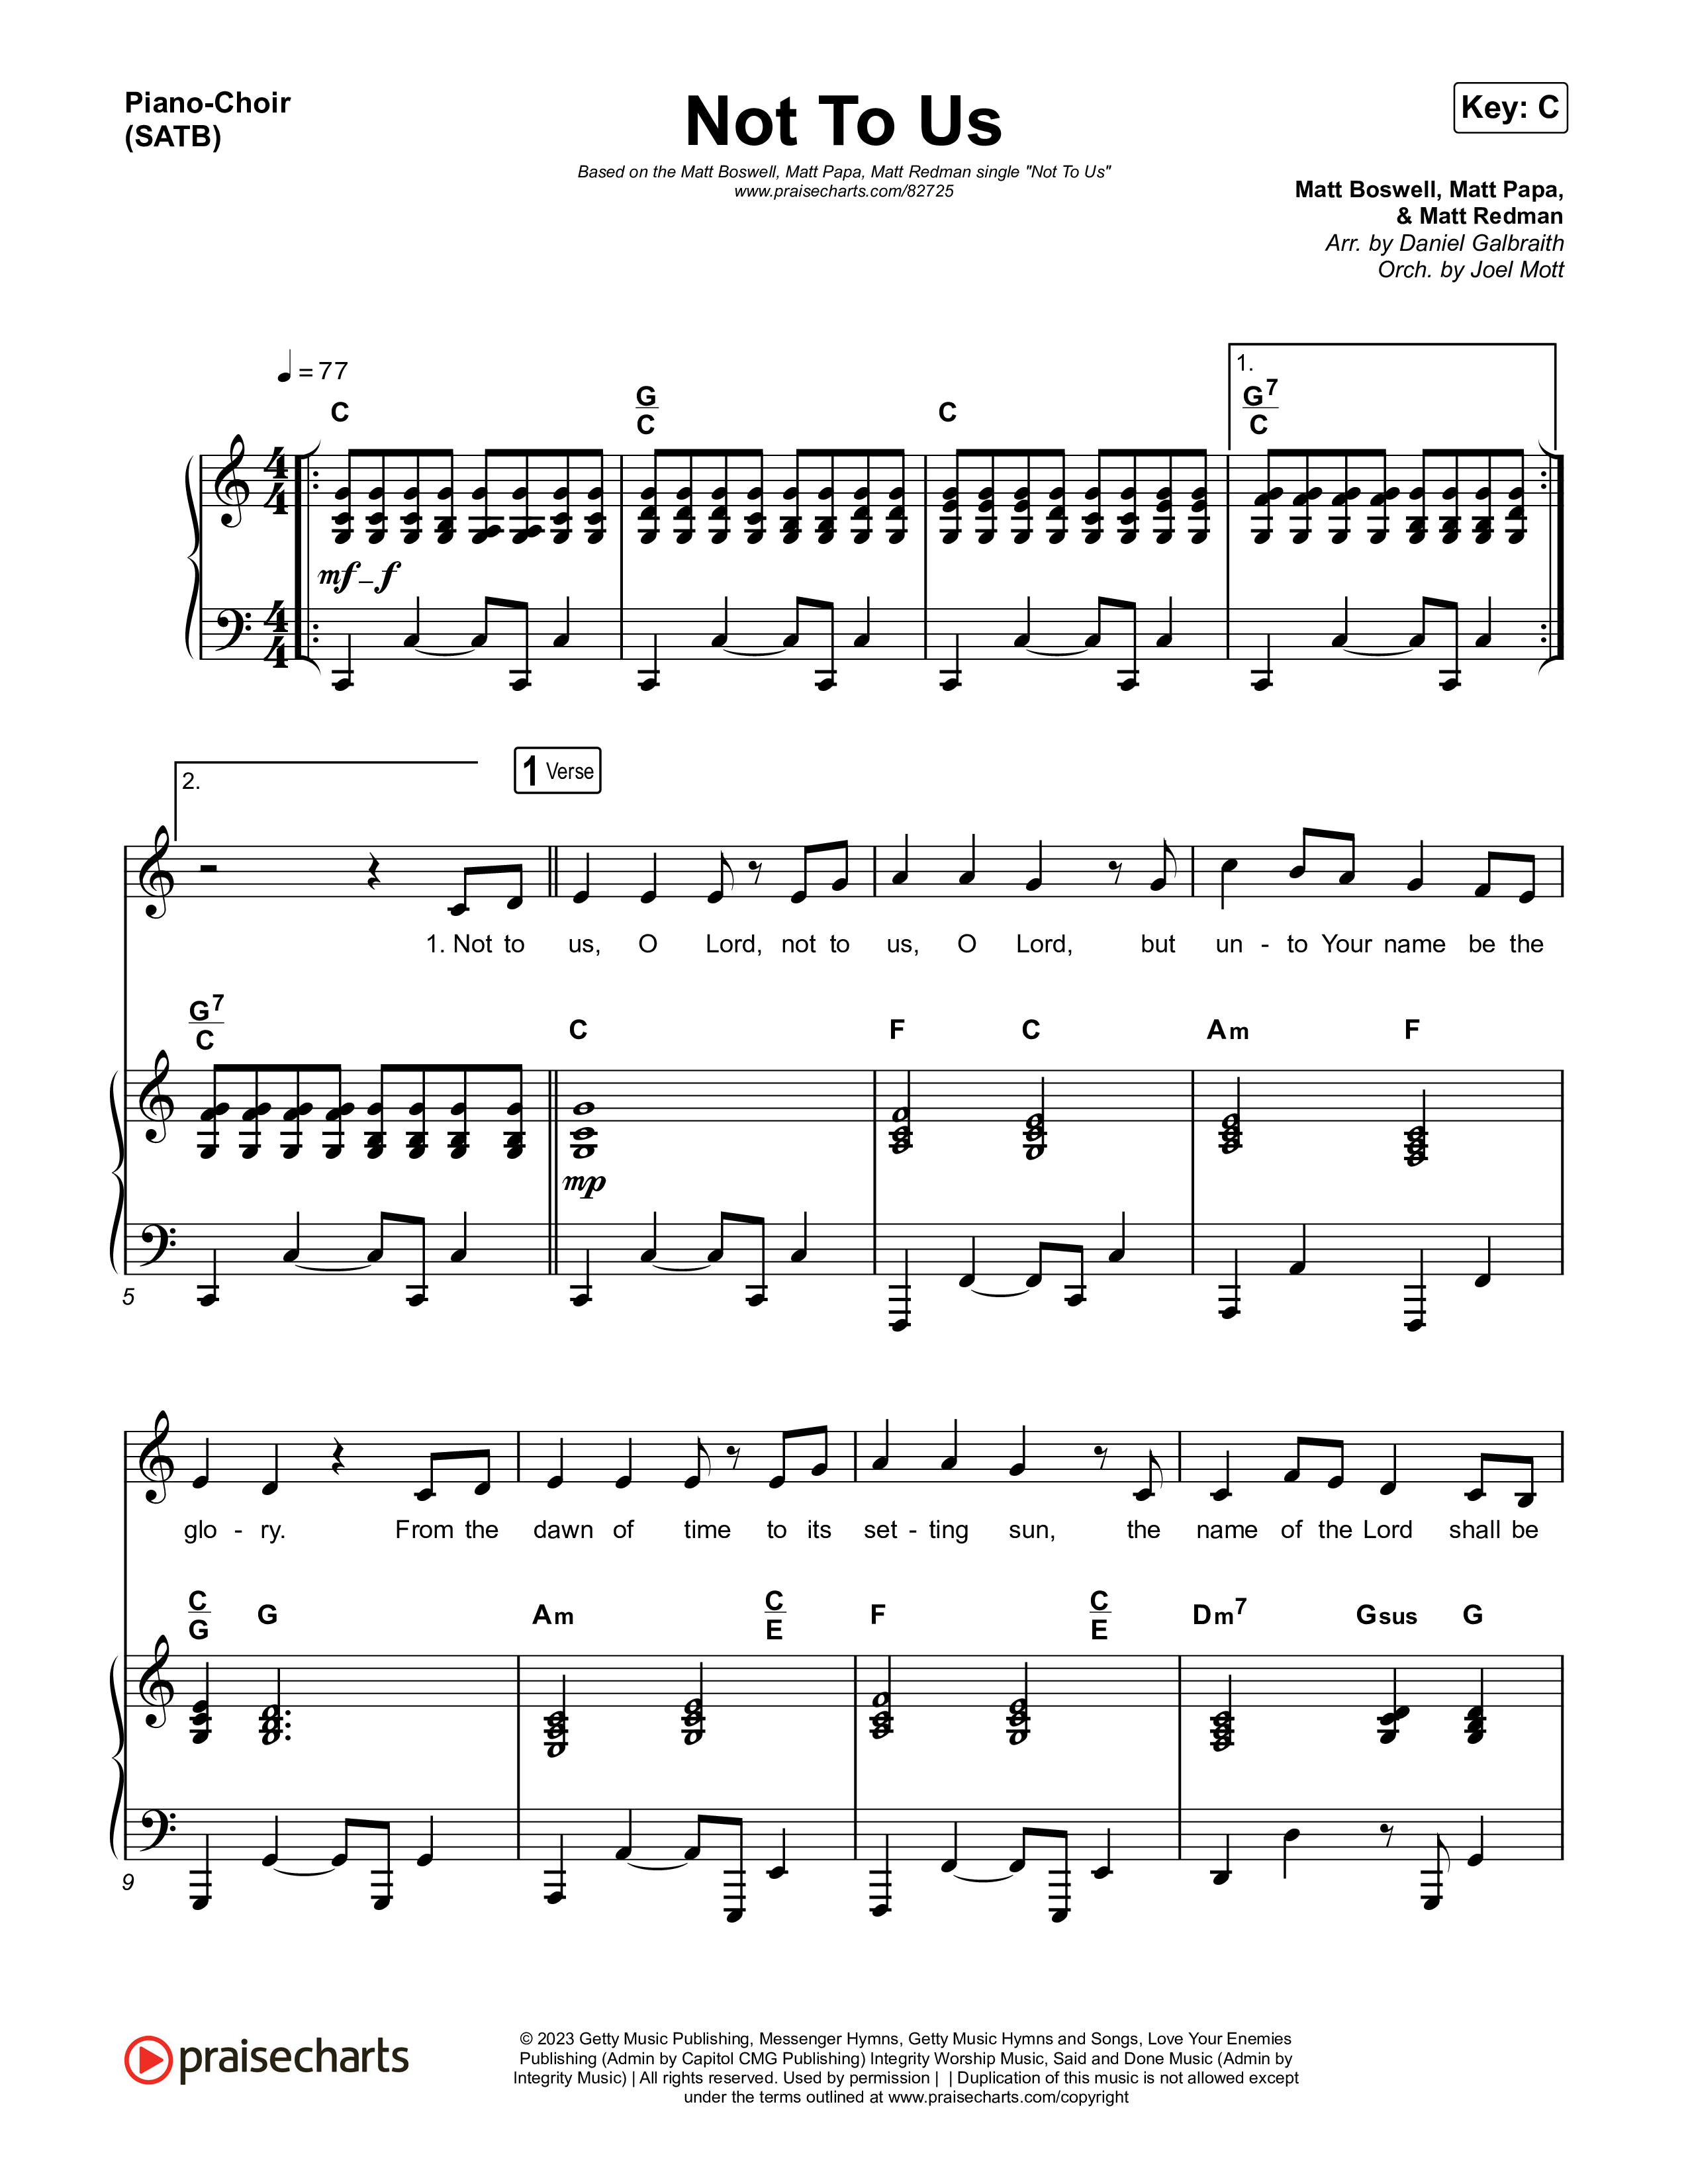 Not to Us (One Name Forever Shall Be Praised) Piano/Vocal (SATB) (Matt Papa / Matt Boswell / Matt Redman)